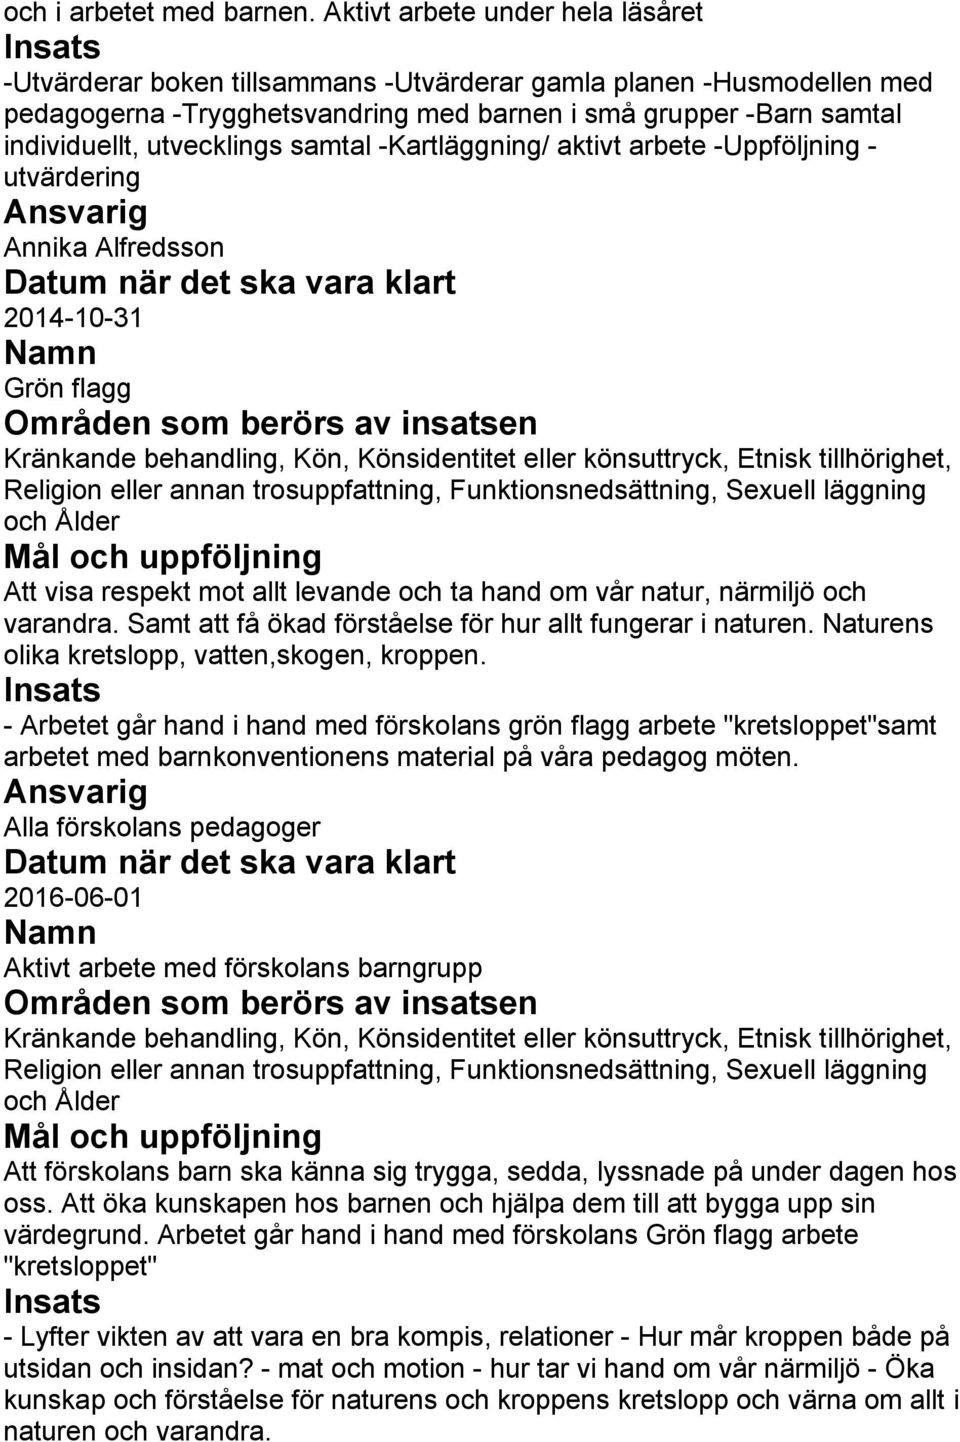 utvecklings samtal -Kartläggning/ aktivt arbete -Uppföljning - utvärdering Ansvarig Annika Alfredsson 2014-10-31 Grön flagg Områden som berörs av insatsen Att visa respekt mot allt levande och ta